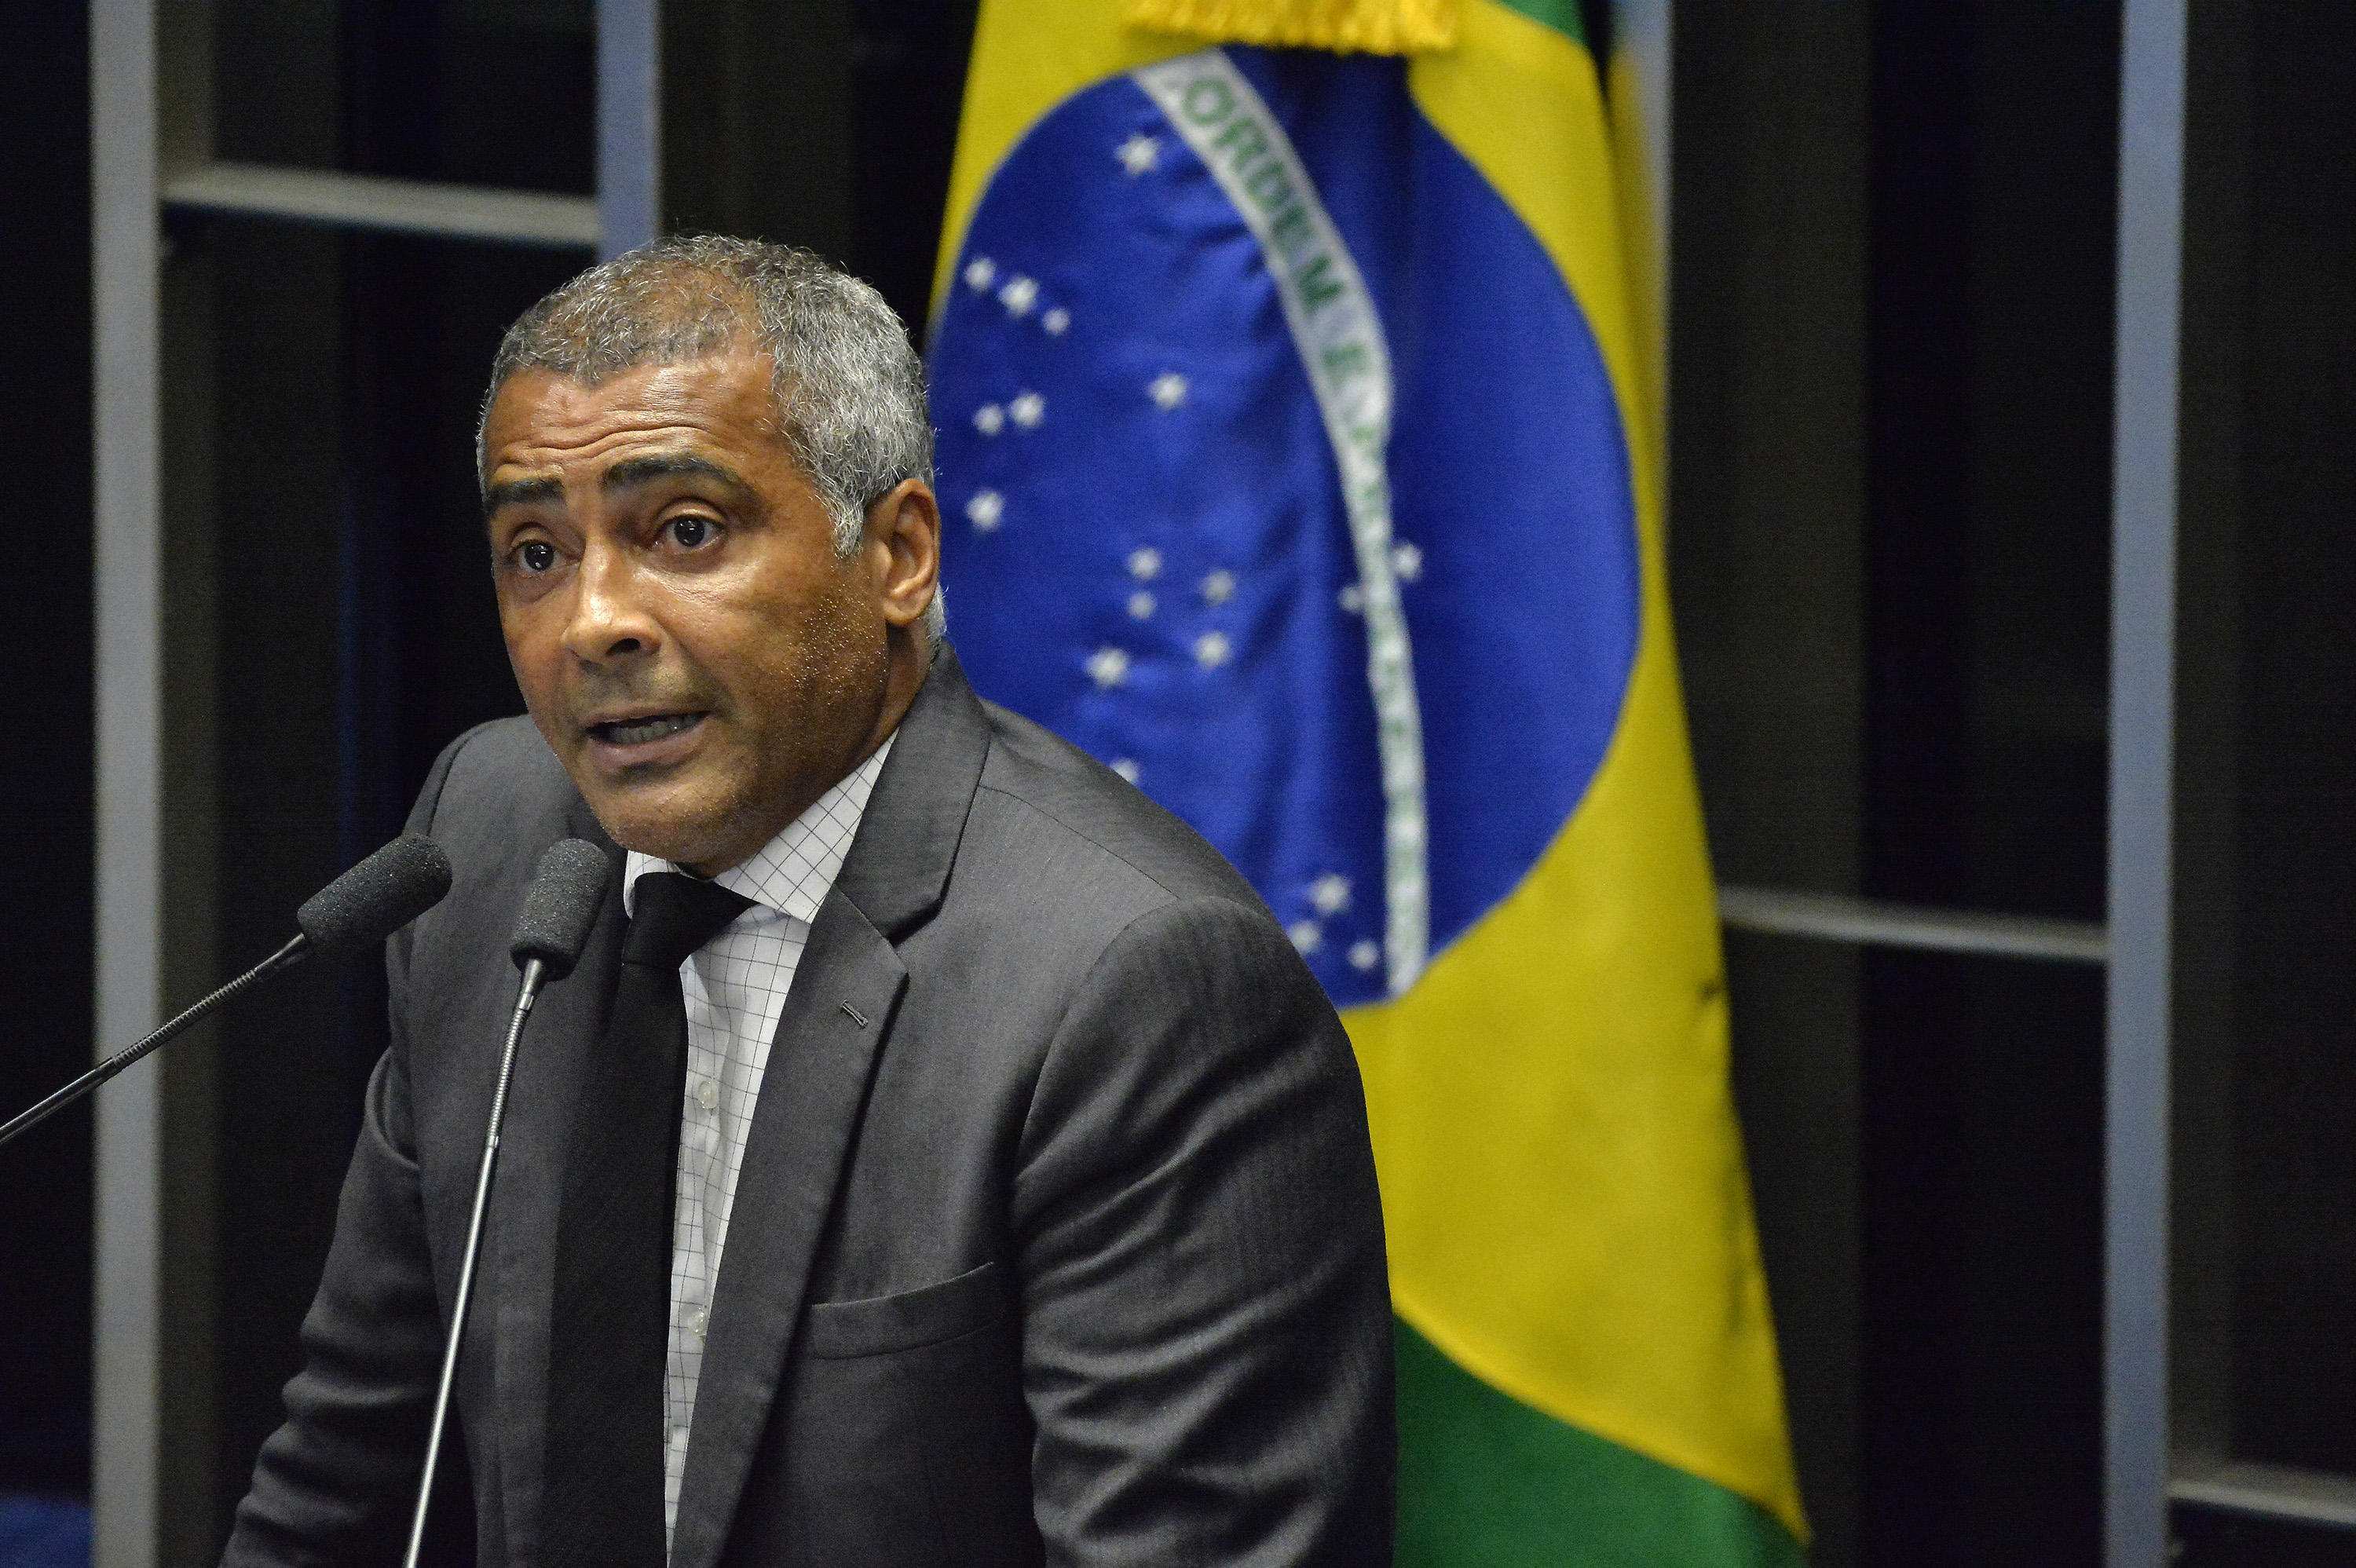 El senador y ex futbolista brasileño Romario de Souza Faría